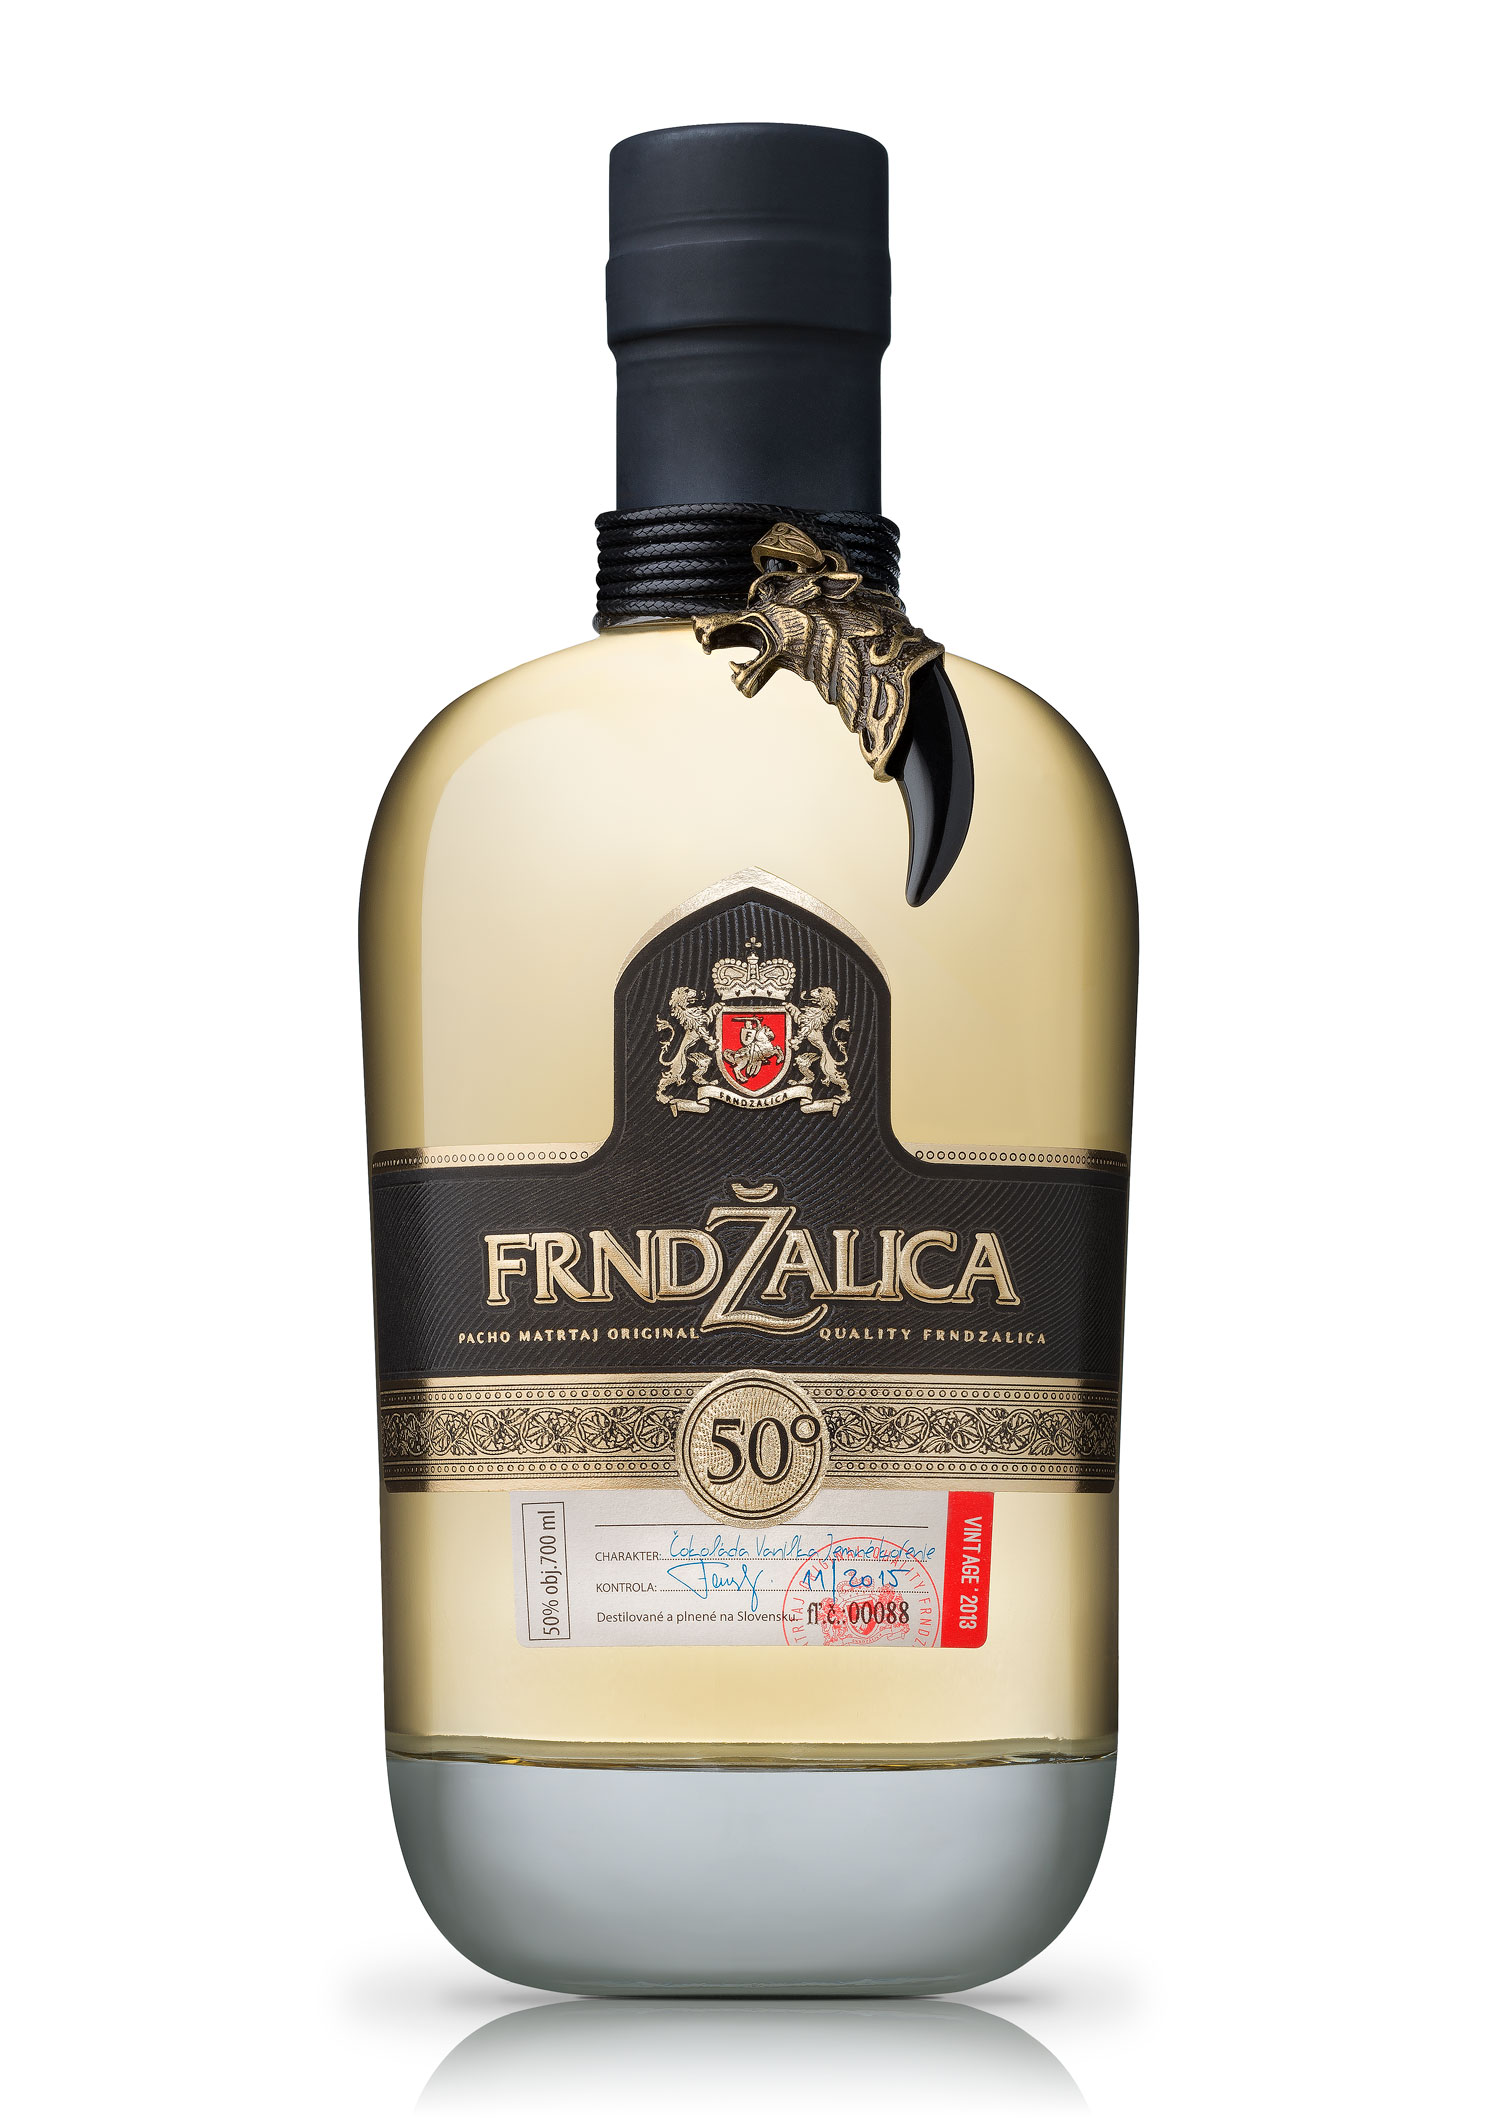 Frndzalica liquor product photography | BOLD